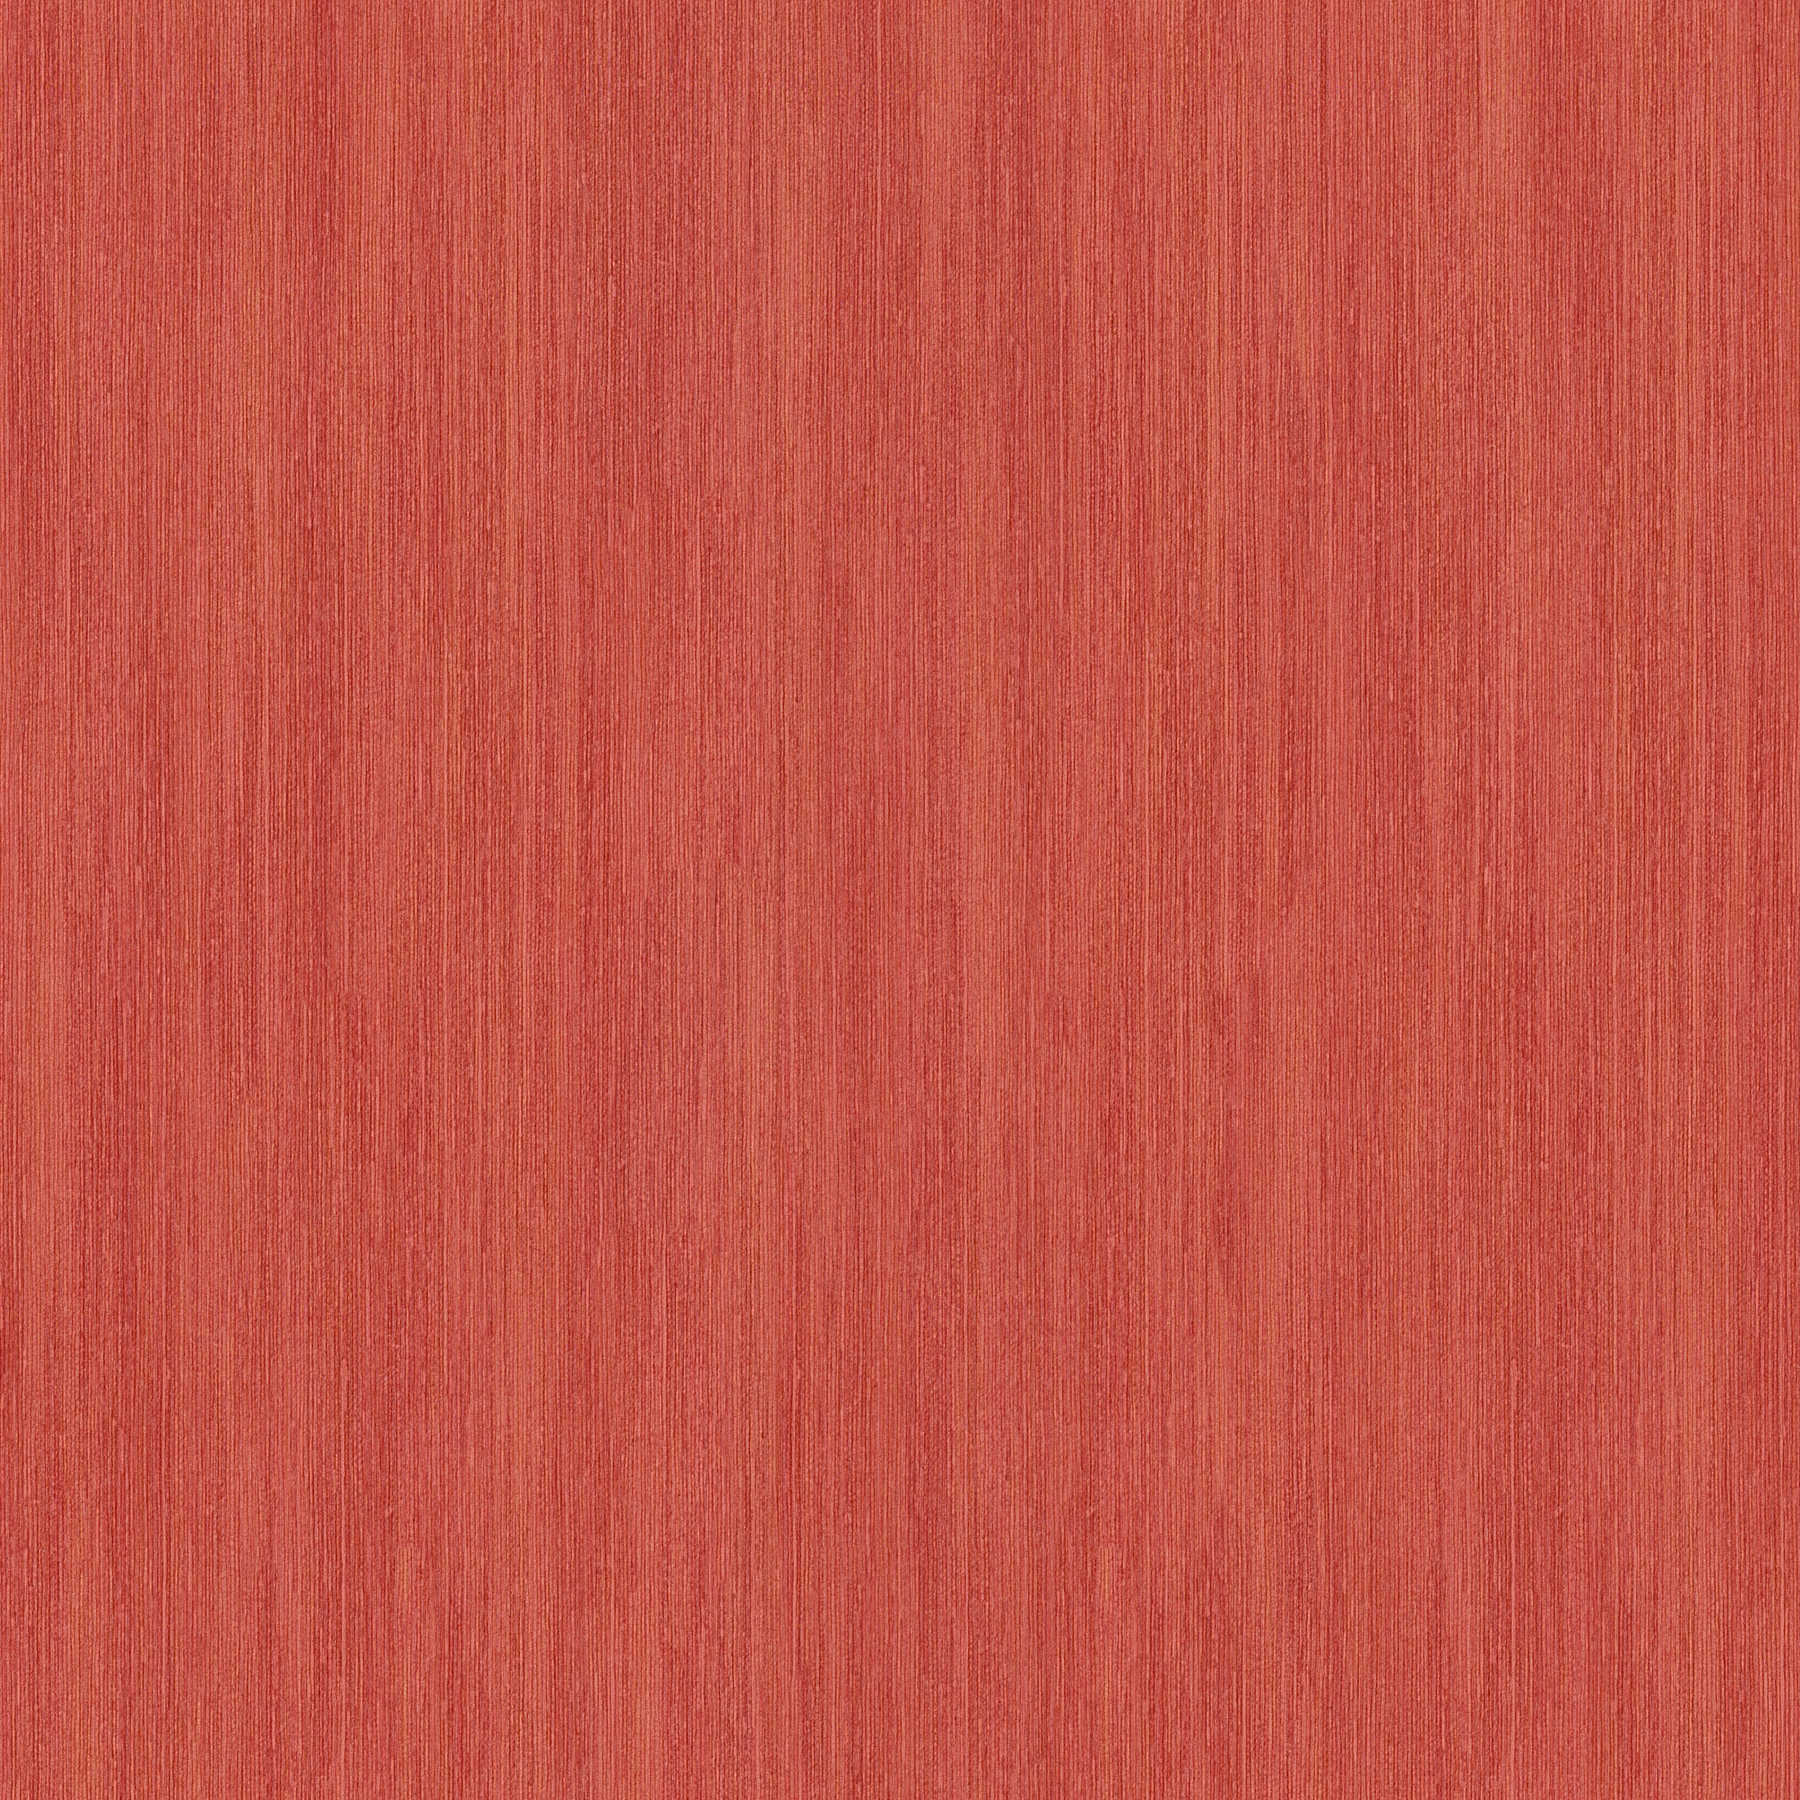 Vliestapete Rot mit Metallic Schraffur, meliertes Design
